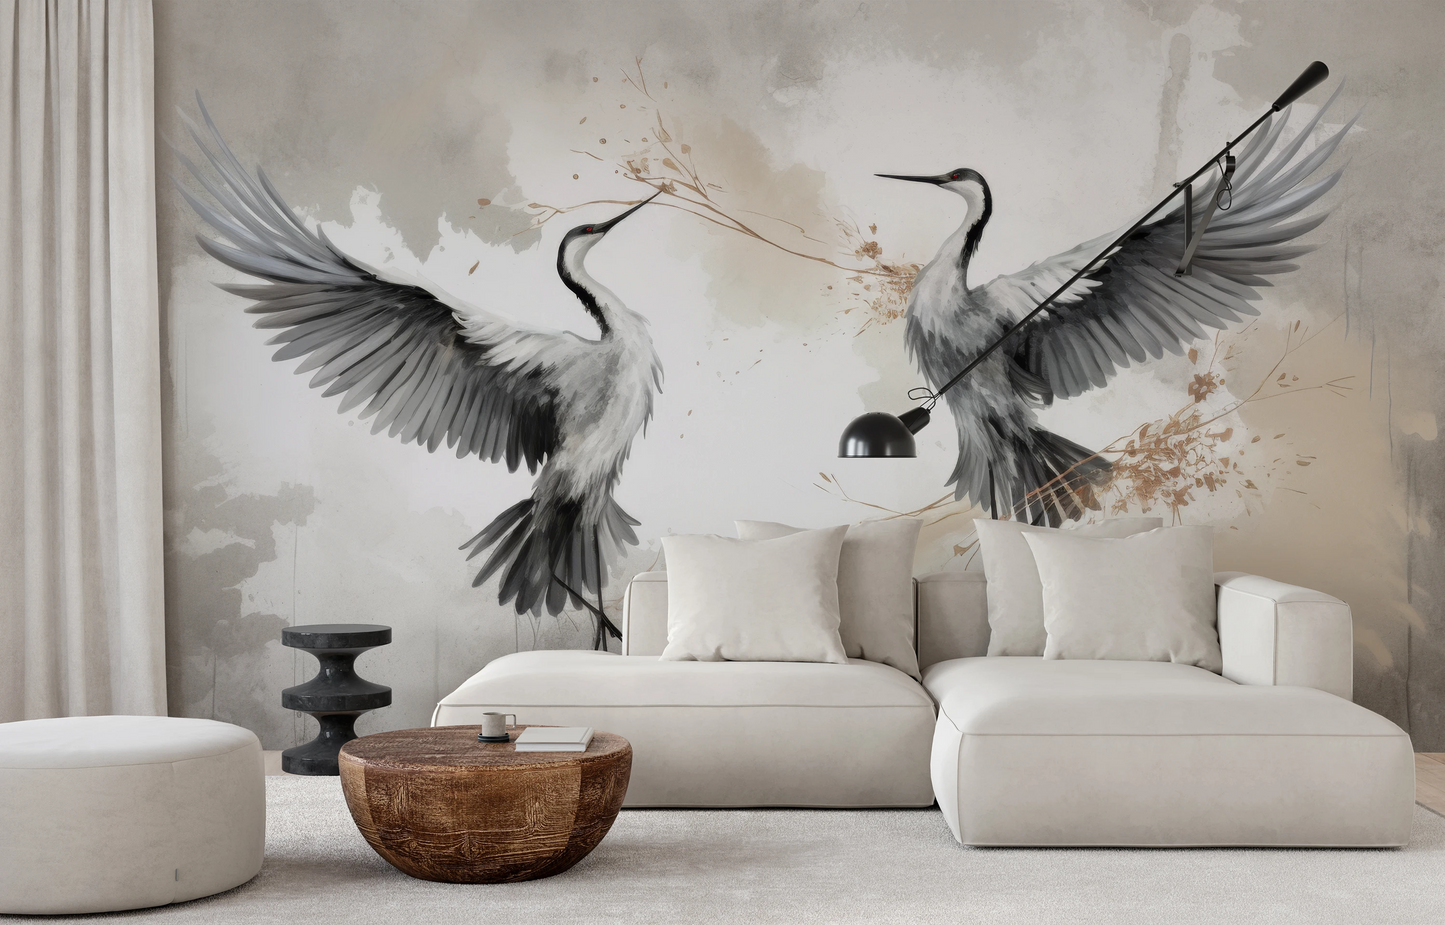 Wzór fototapety malowanej o nazwie Wings of Freedom pokazanej w aranżacji wnętrza.